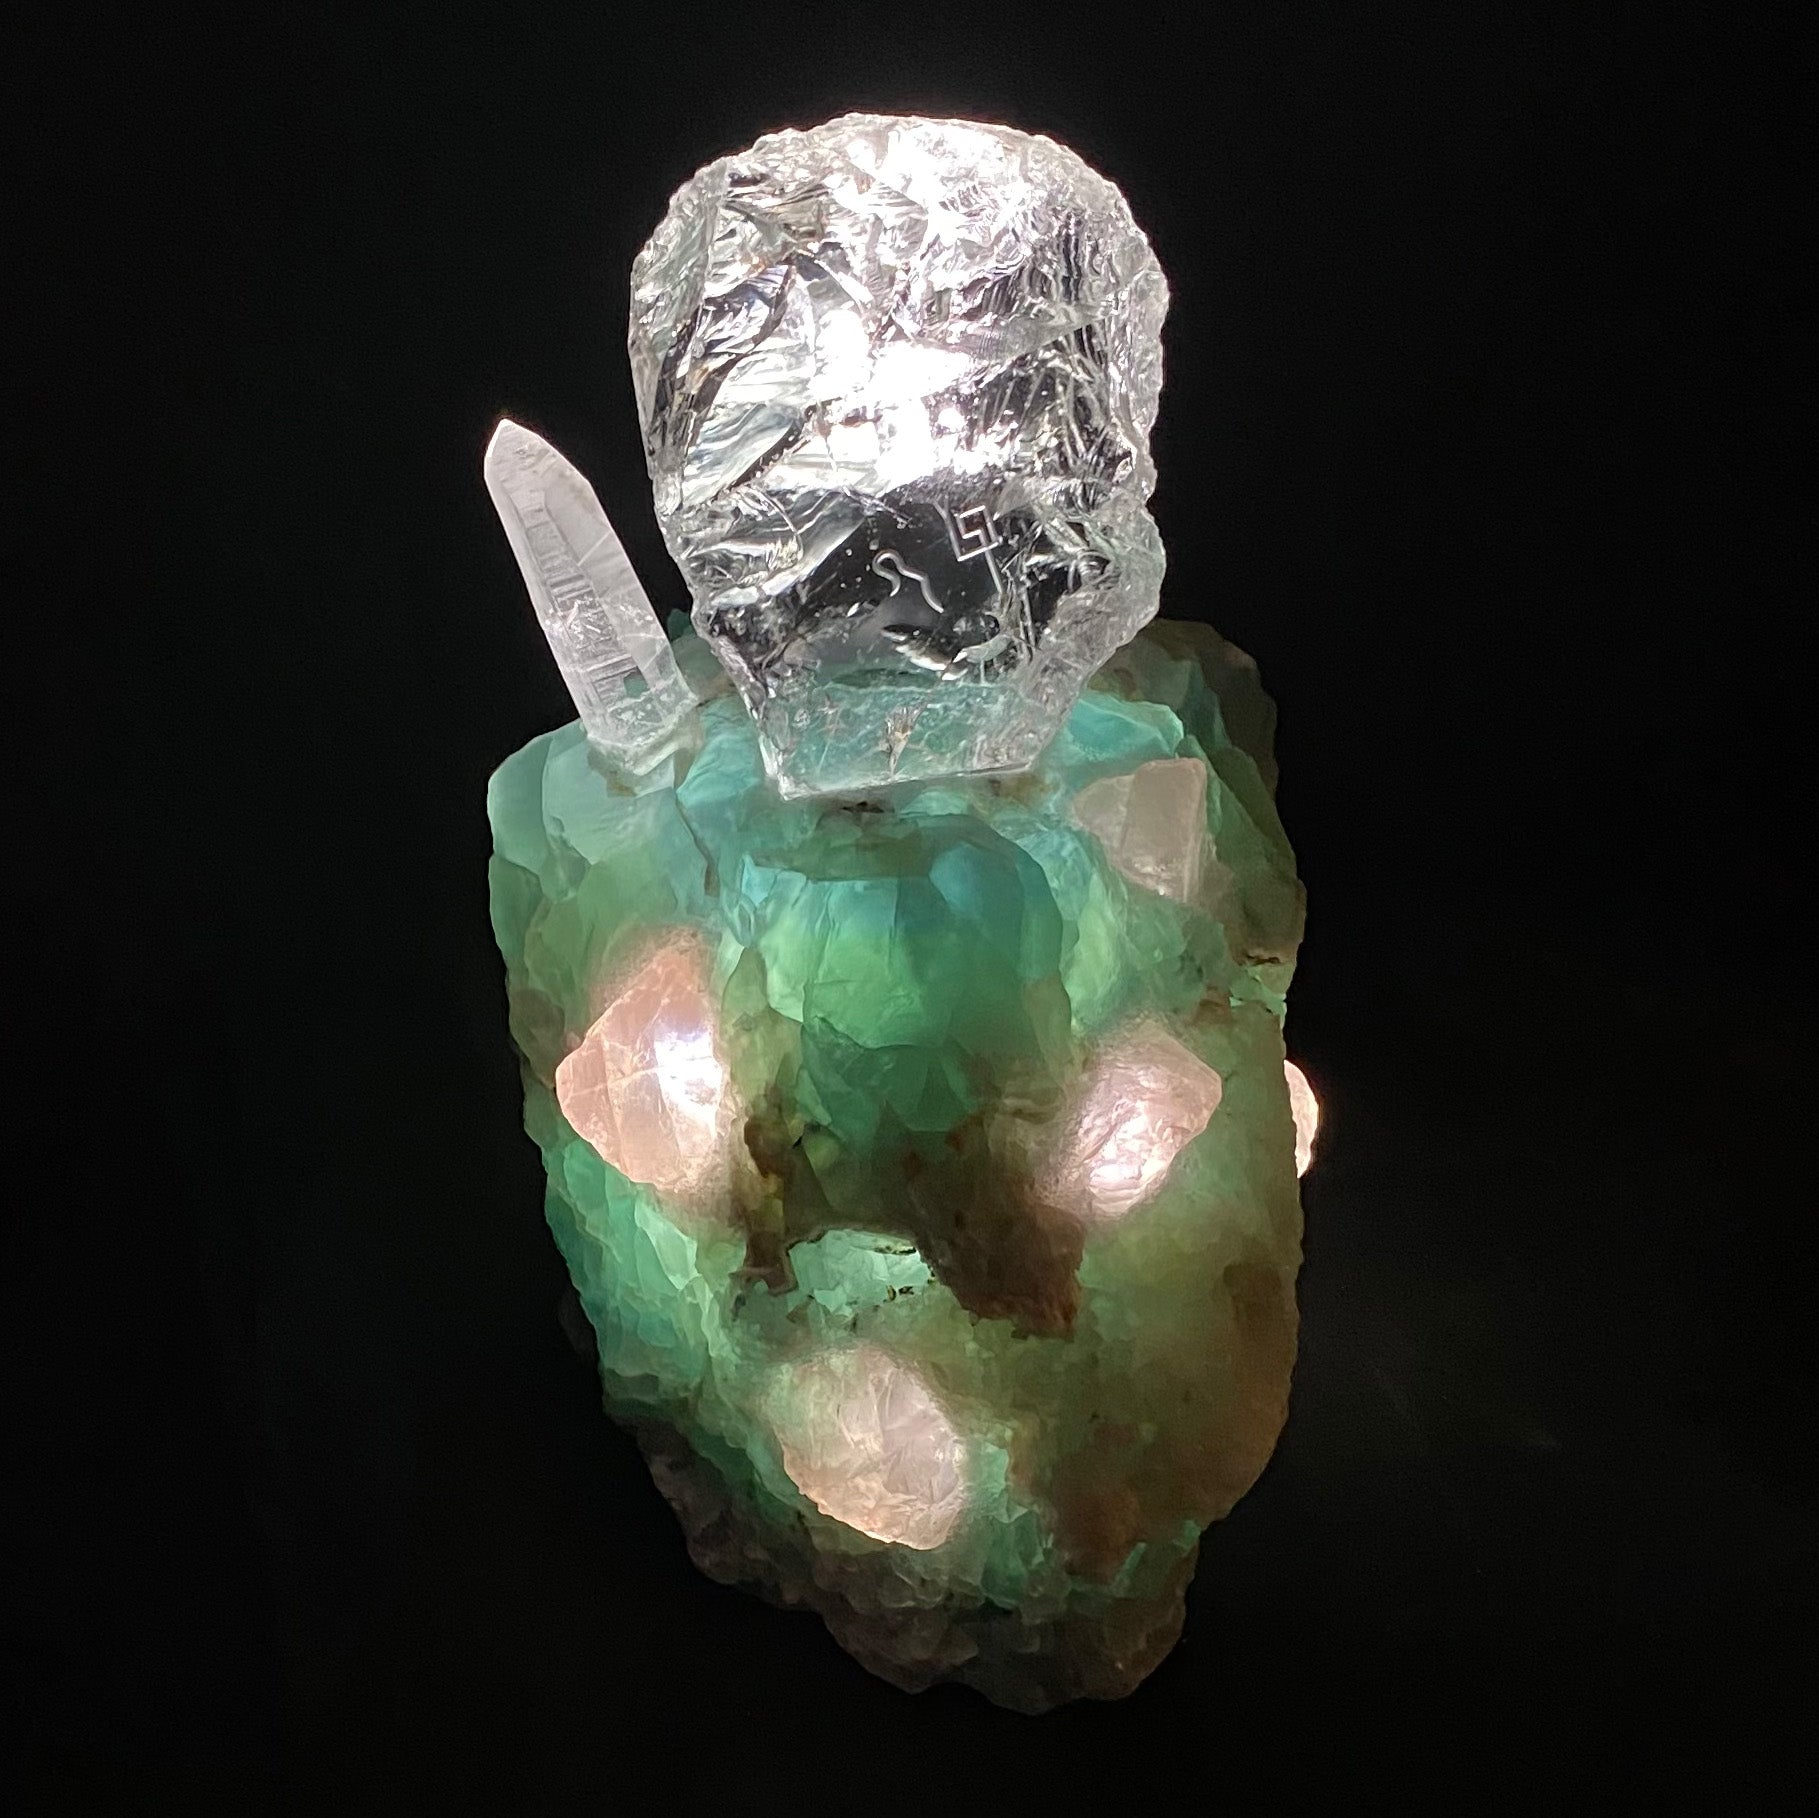 Crystal Light Sculpture 'The Teacher'